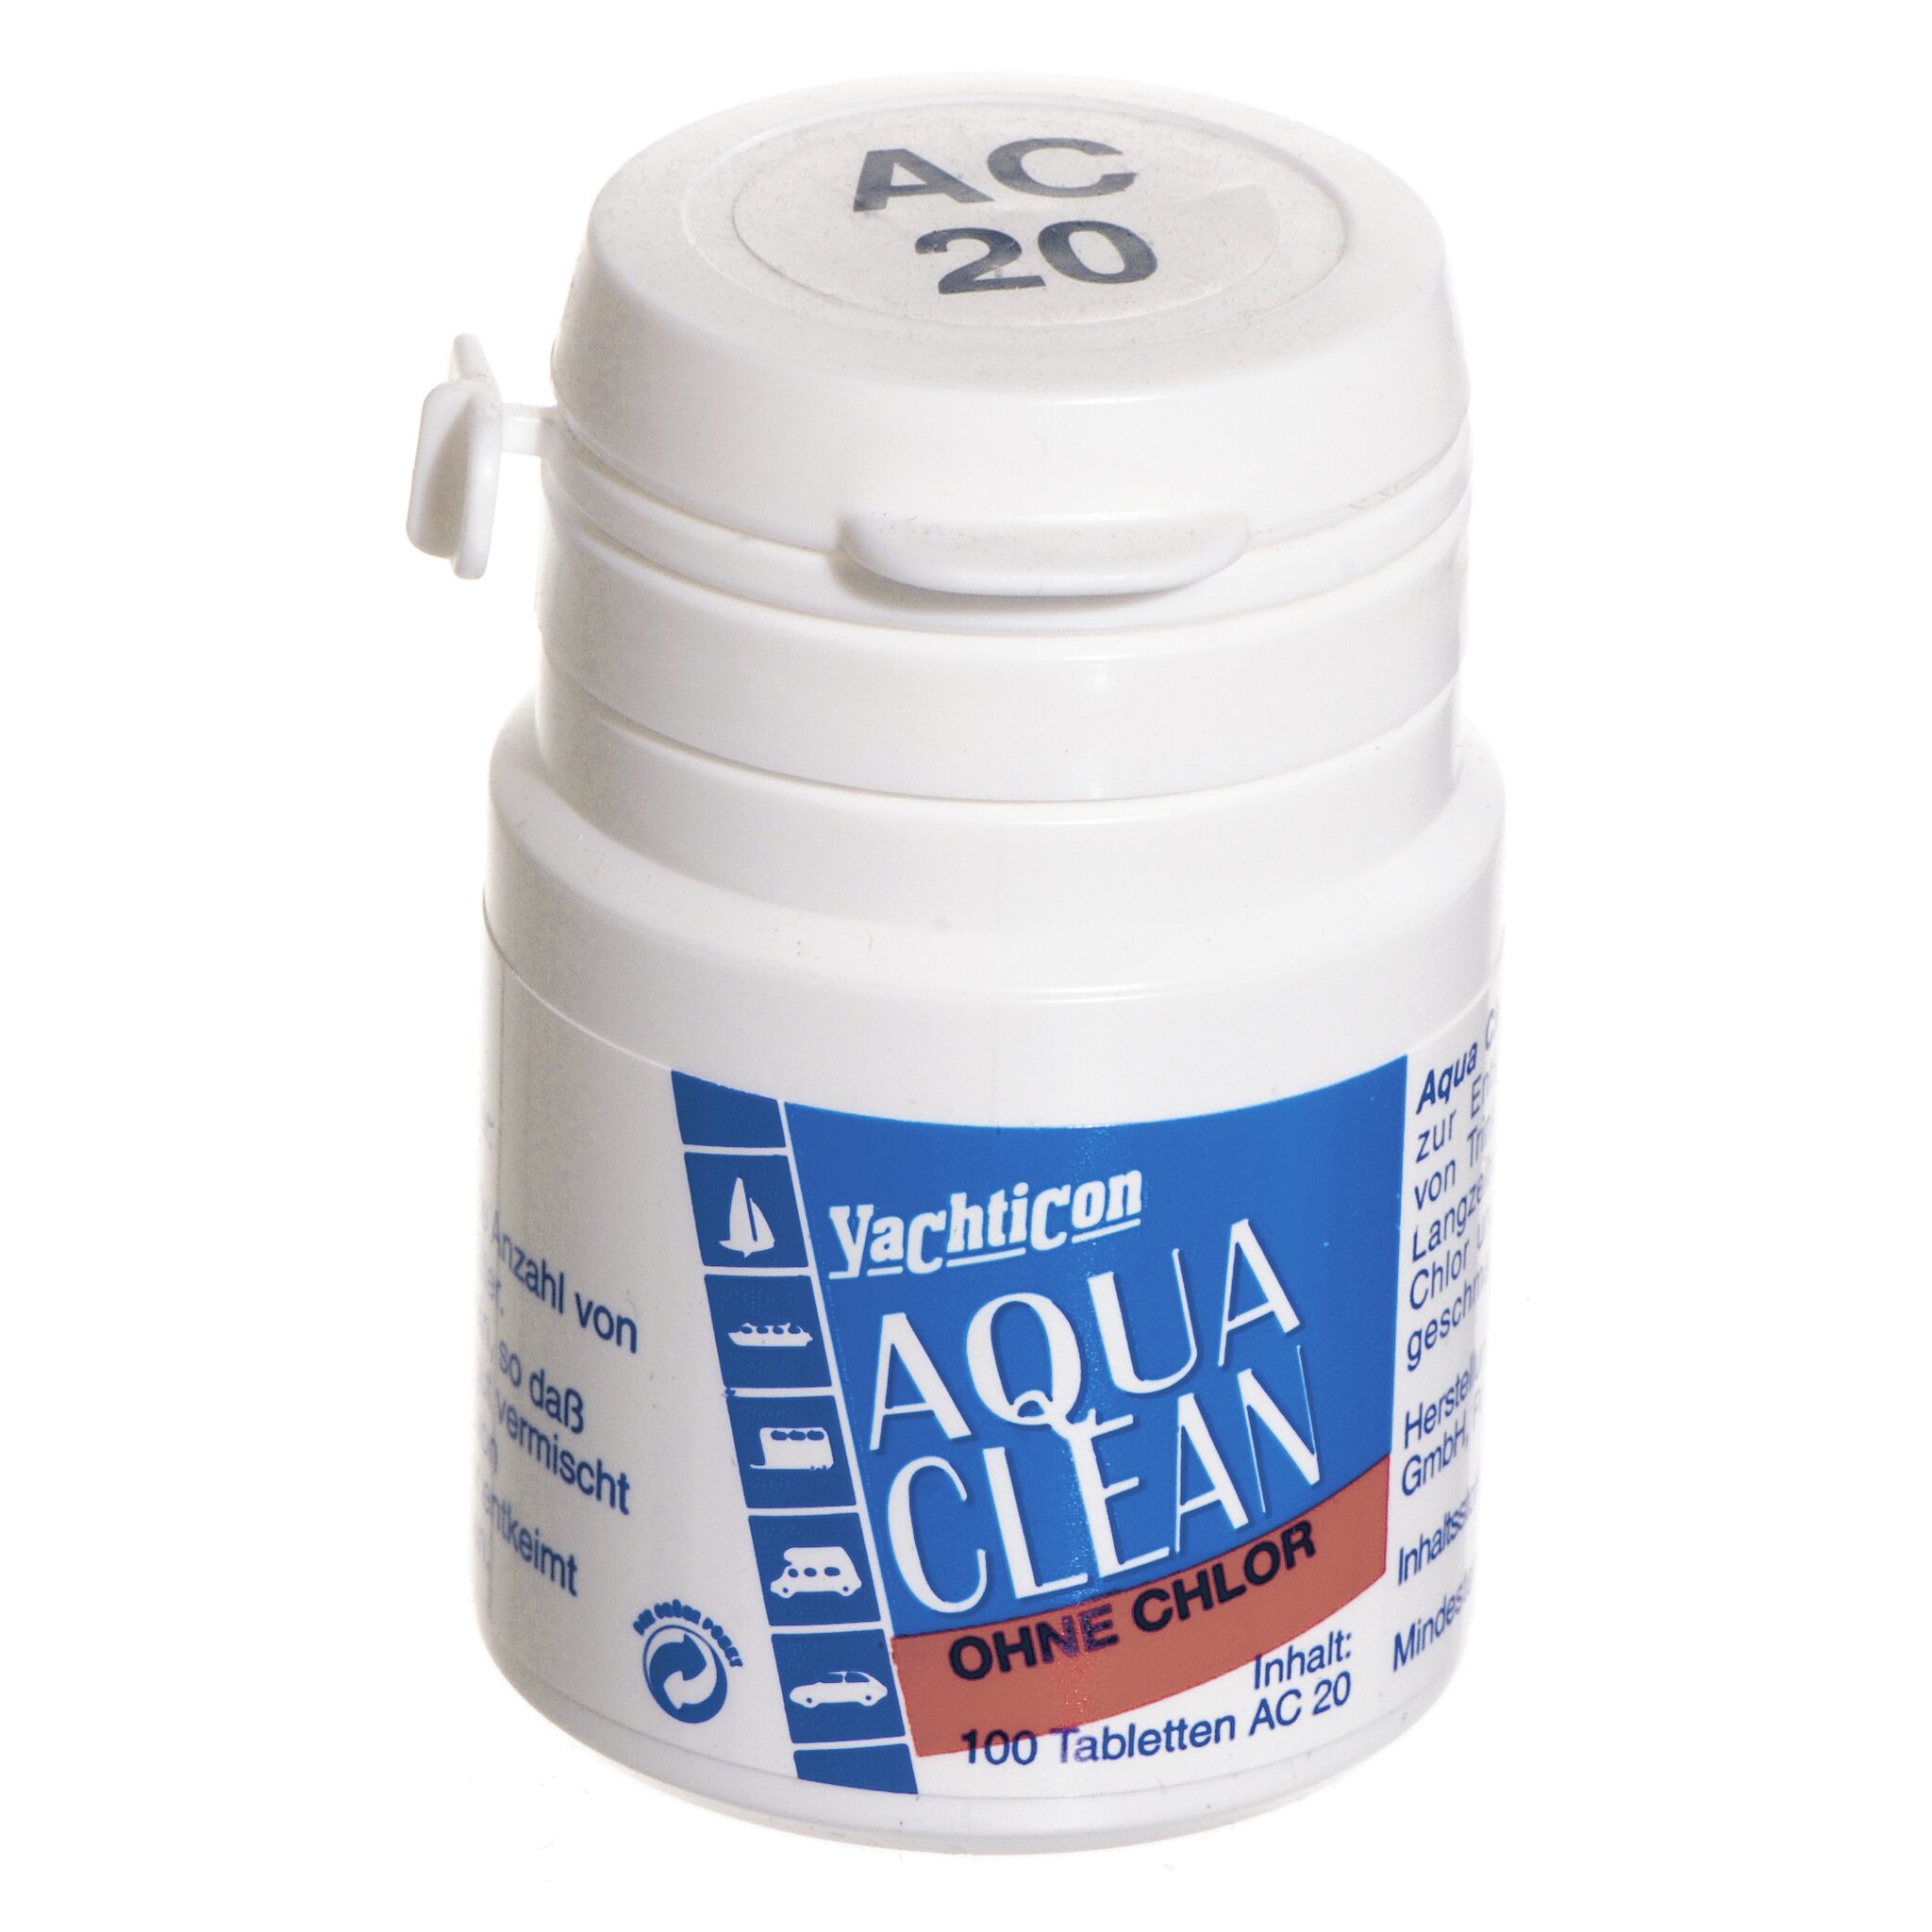 Yachticon Aqua Clean AC 20 - ohne Chlor - 100 Tabletten